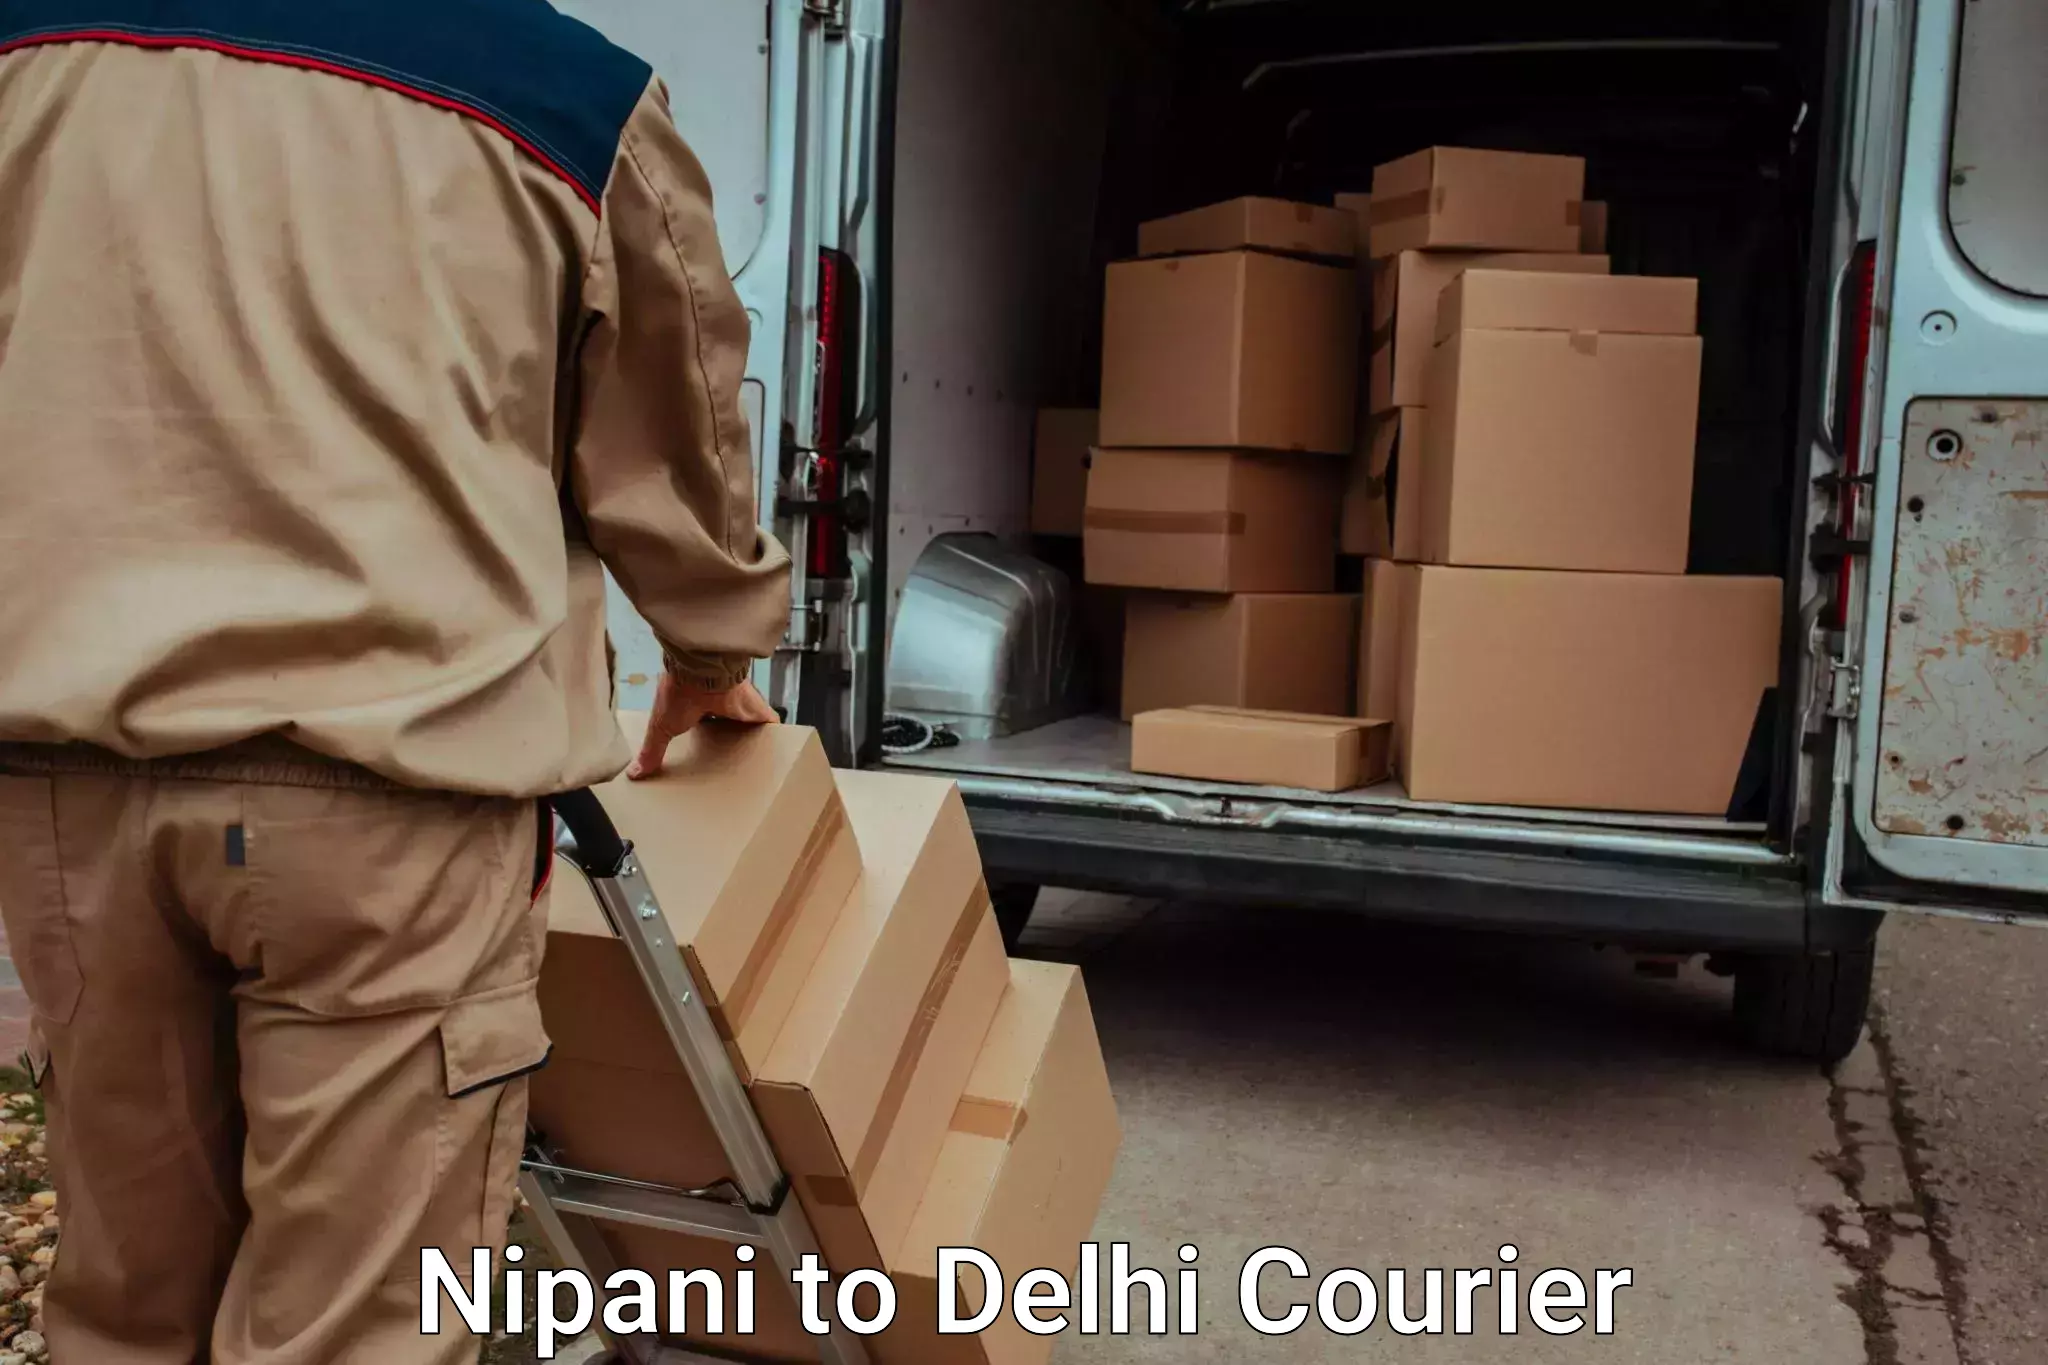 Luggage transport company Nipani to Sarojini Nagar